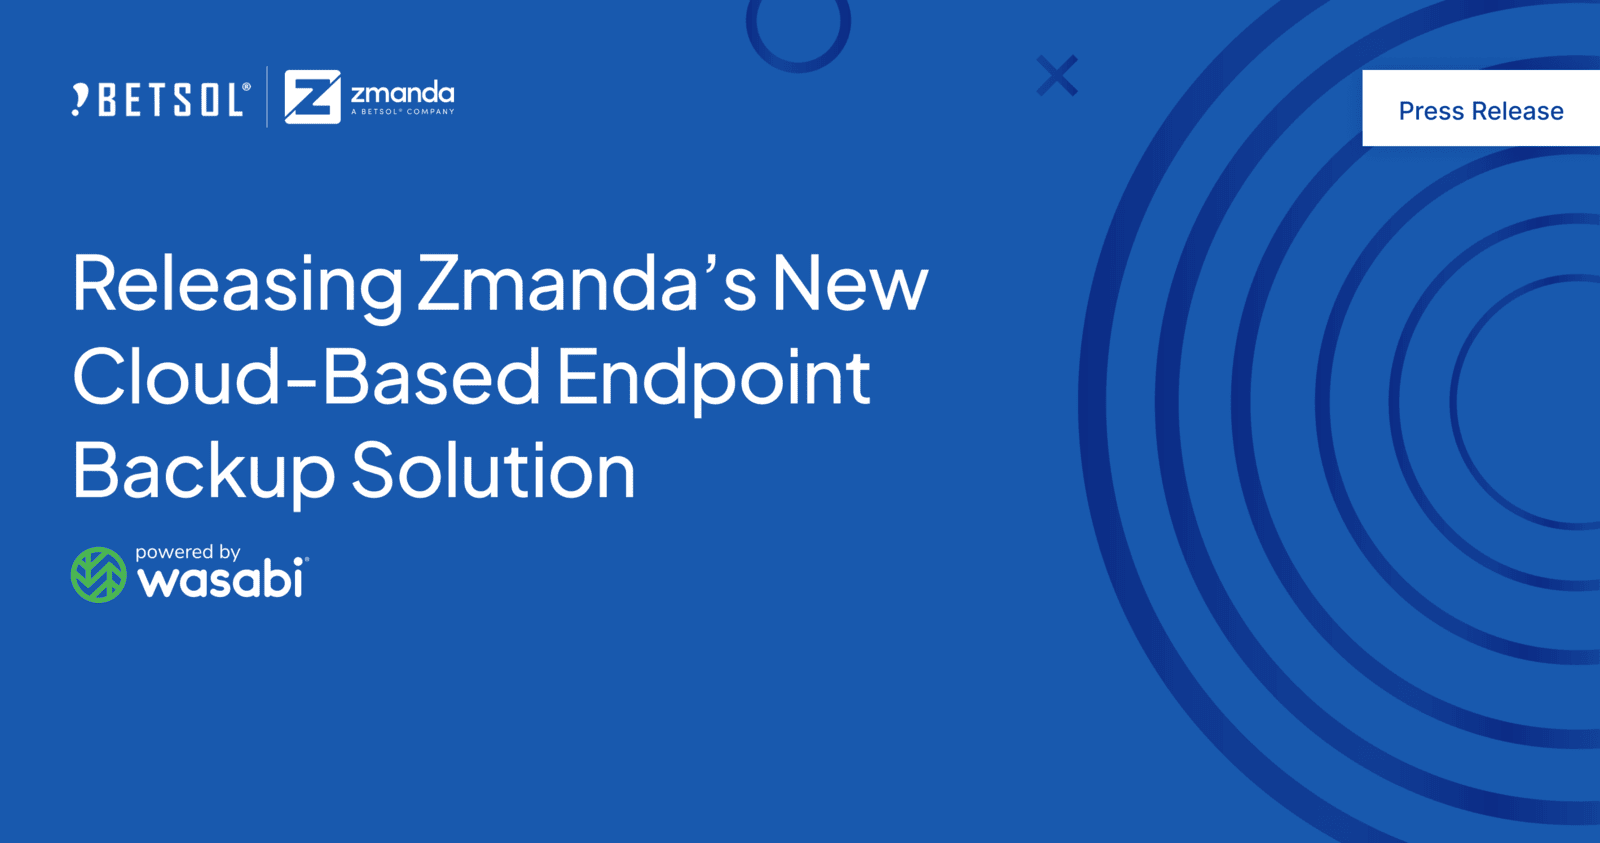 Zmanda Endpoint Release announcement